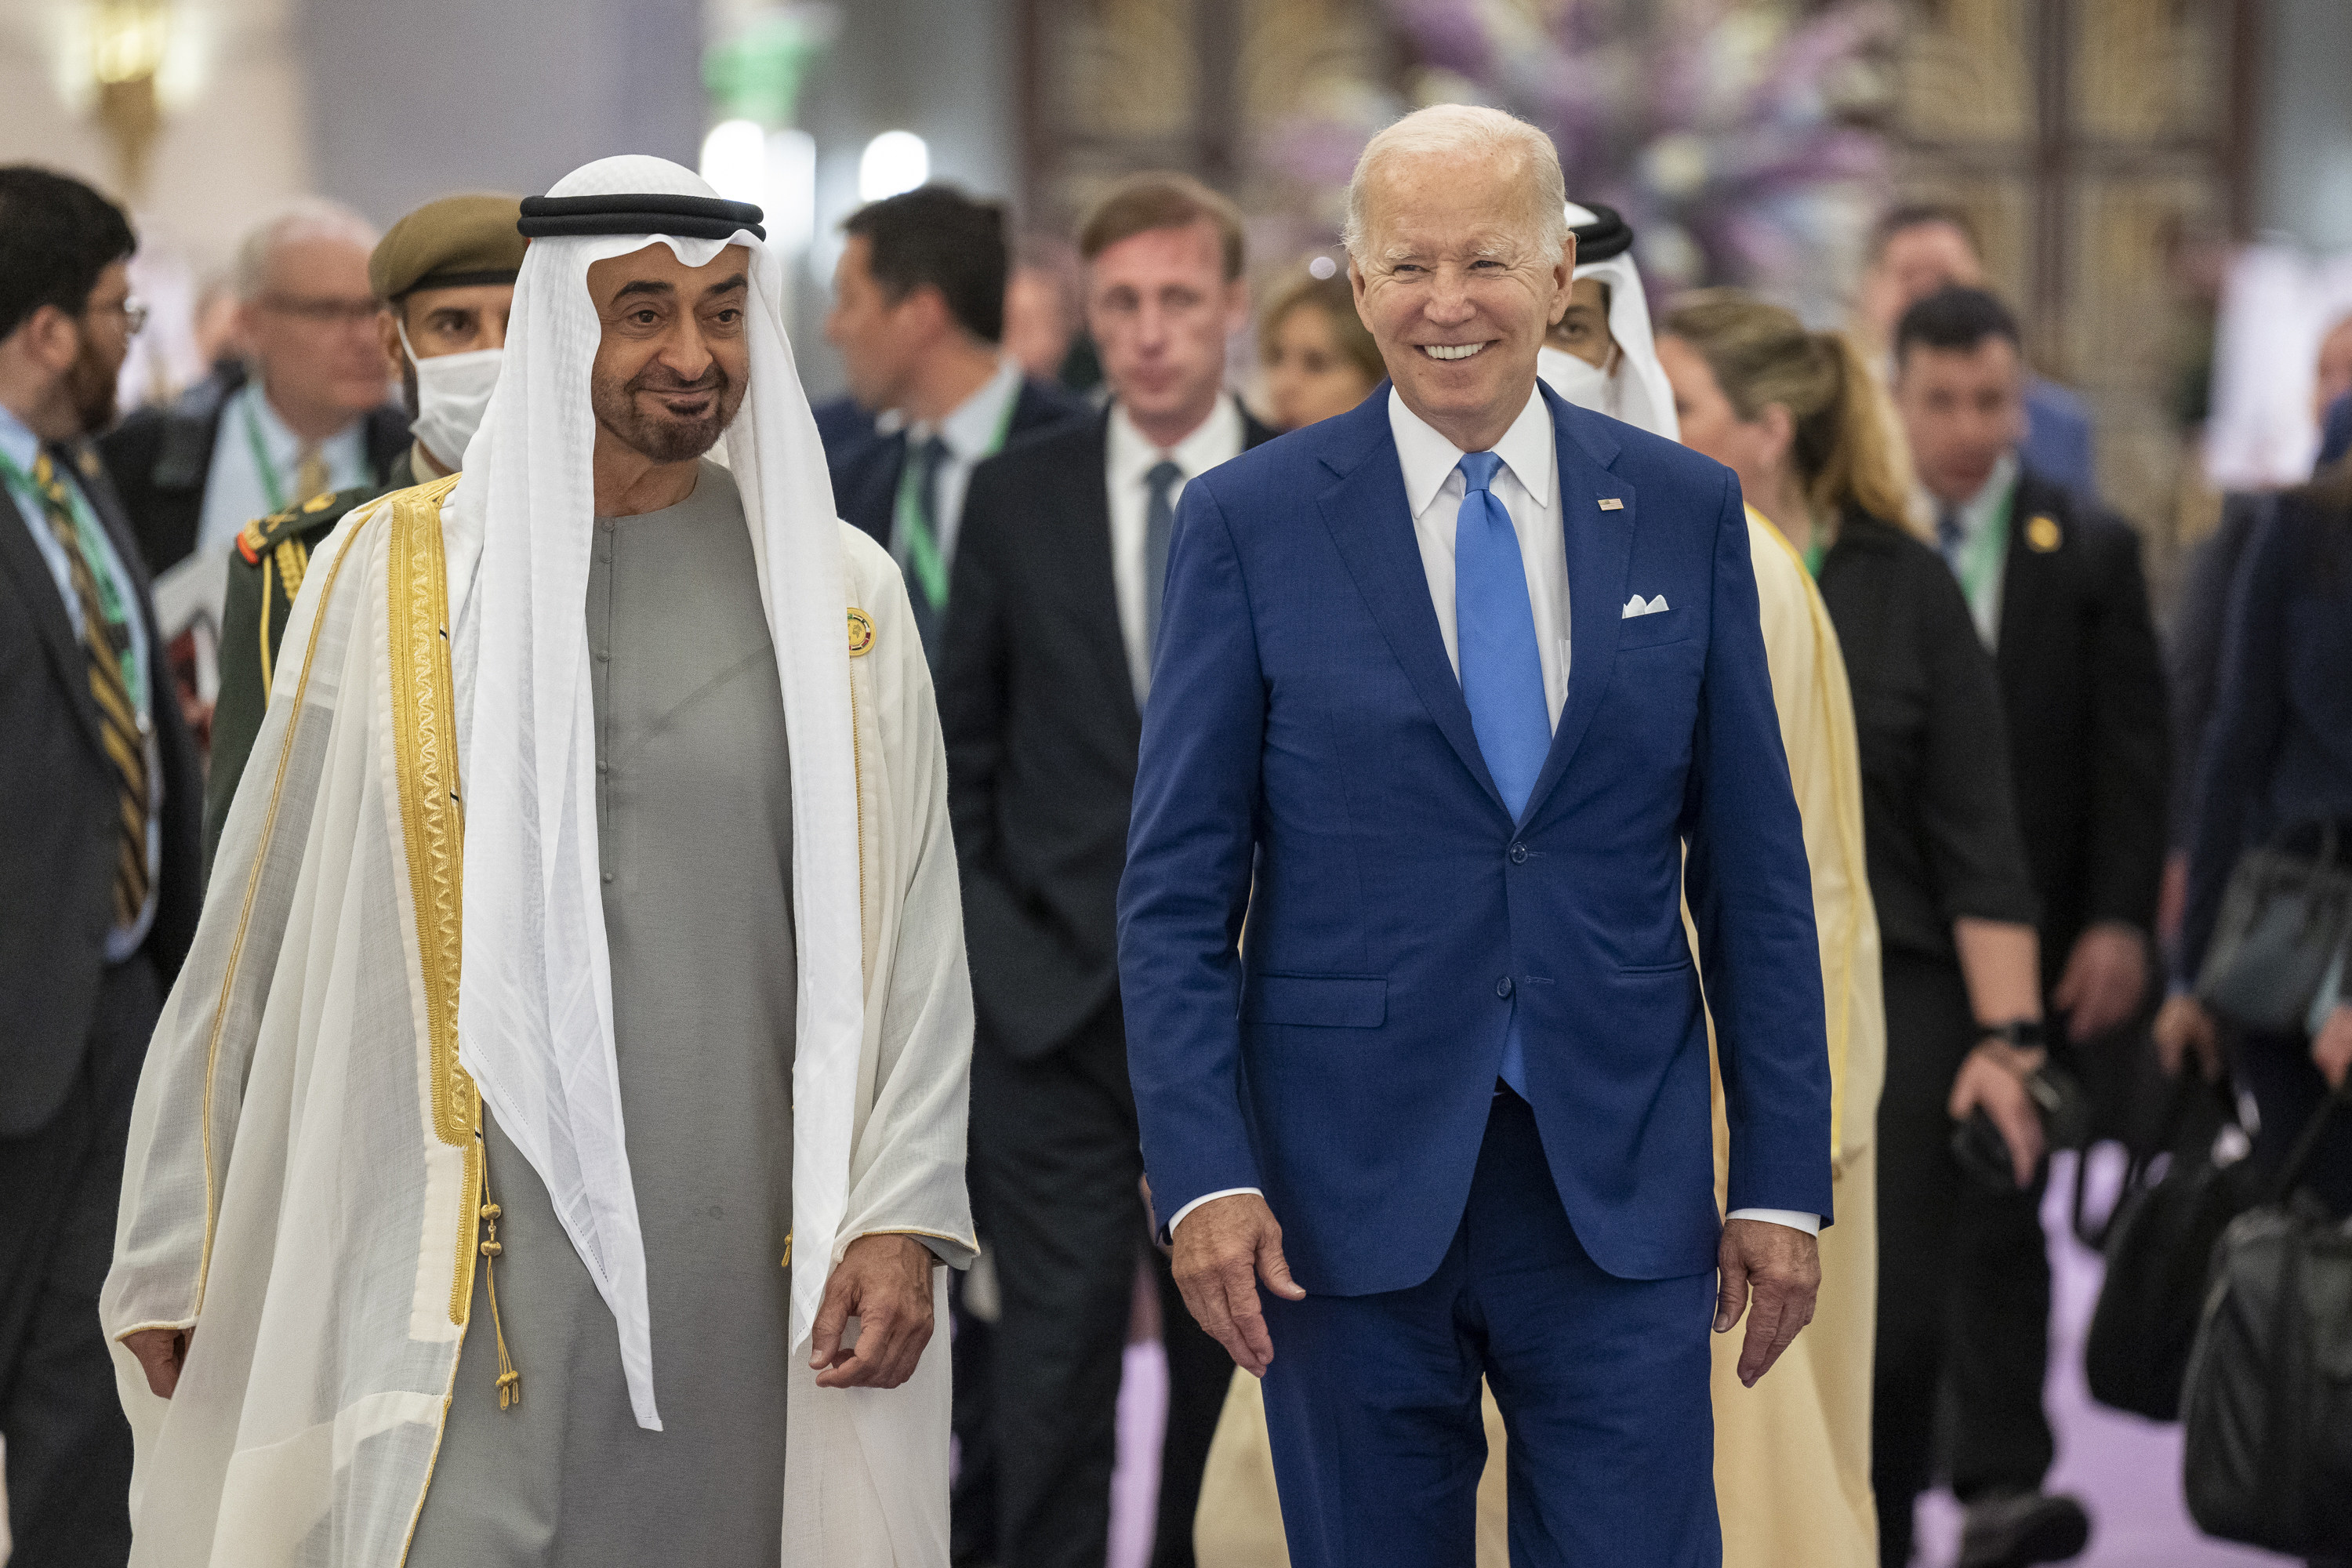 Joe Biden as a mediator in the Middle East